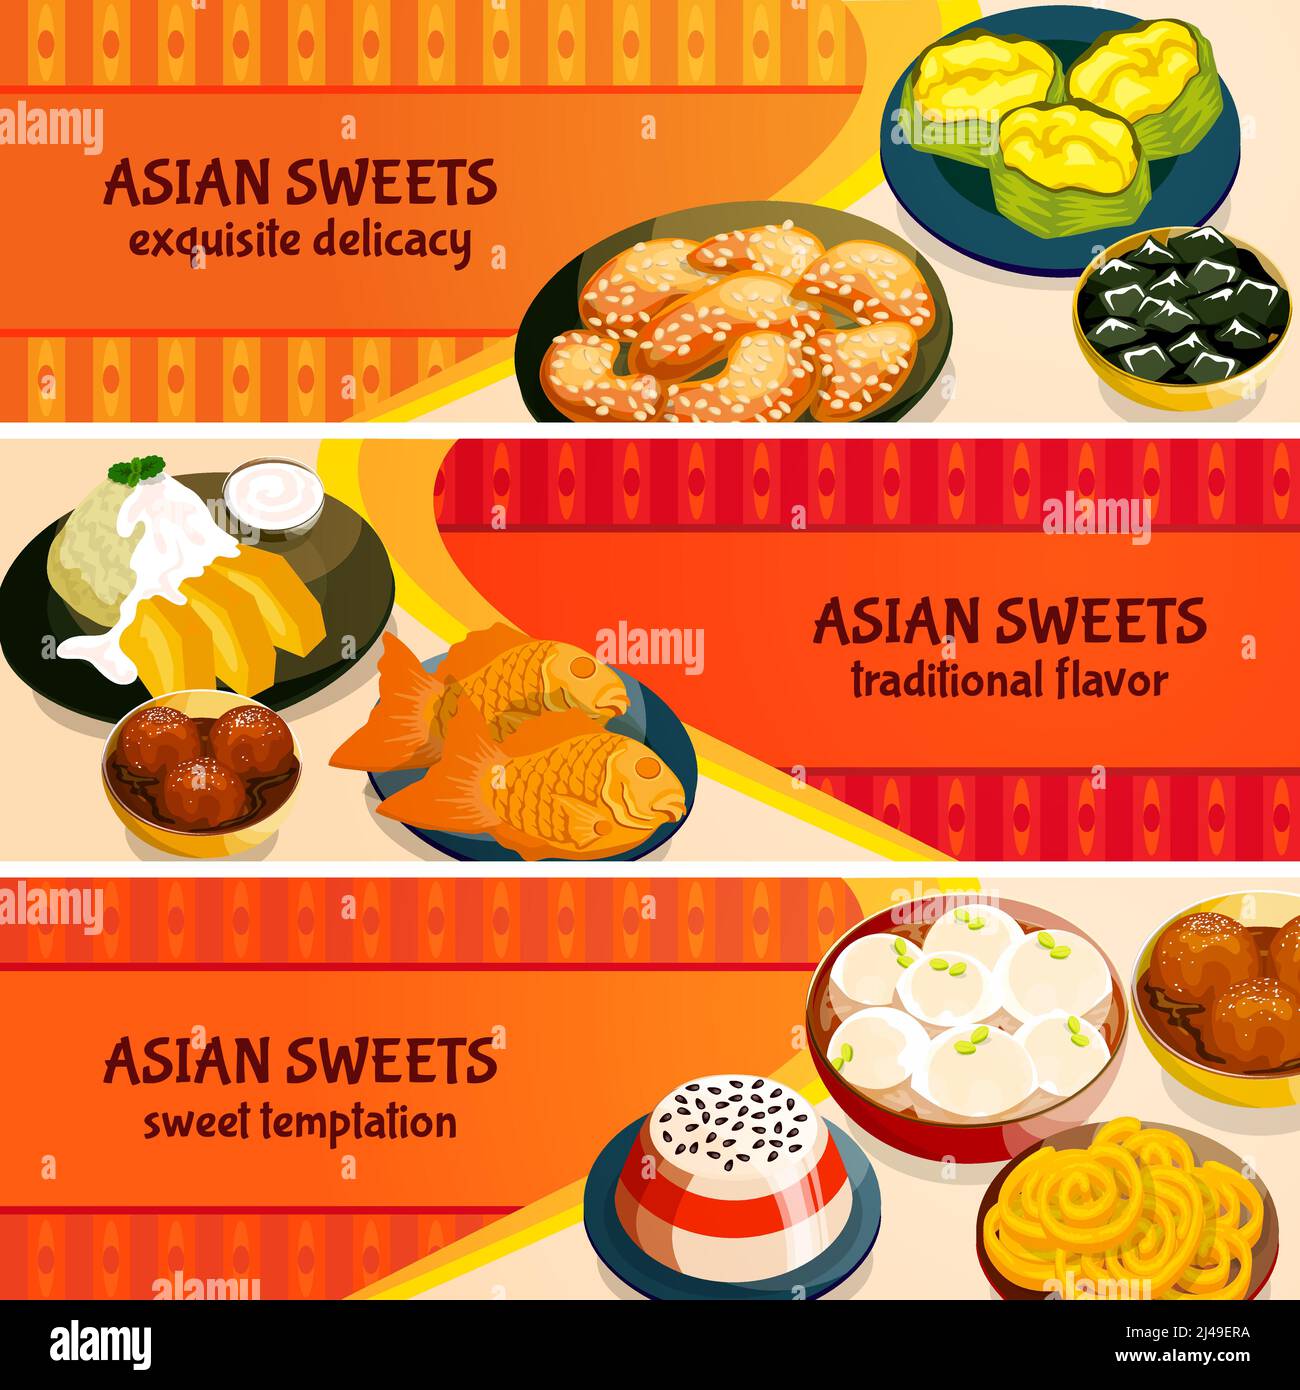 Asiatische Süßigkeiten horizontale Banner mit traditionellen Geschmack von exquisiten gesetzt Delikatessen isoliert Vektor-Illustration Stock Vektor